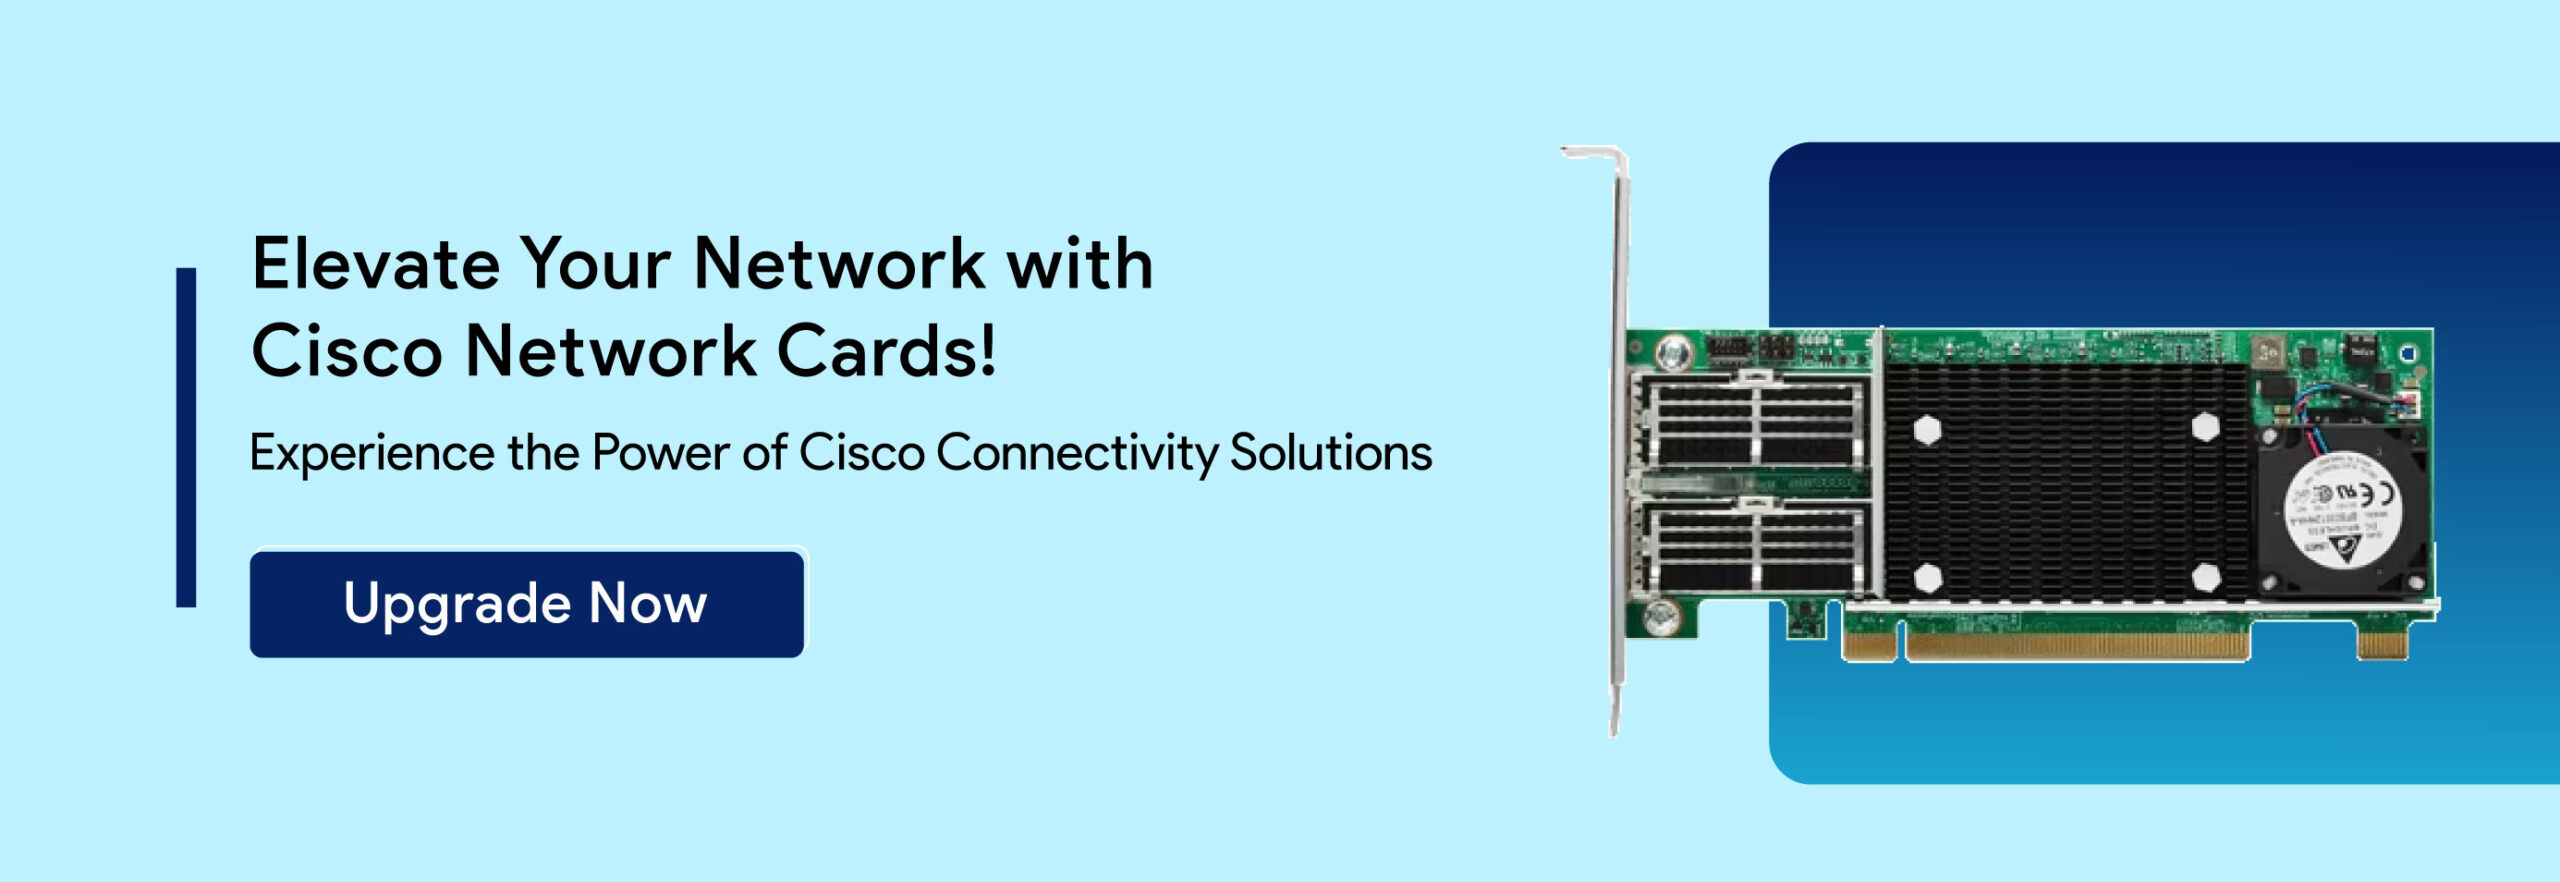 Cisco-Network-Cards